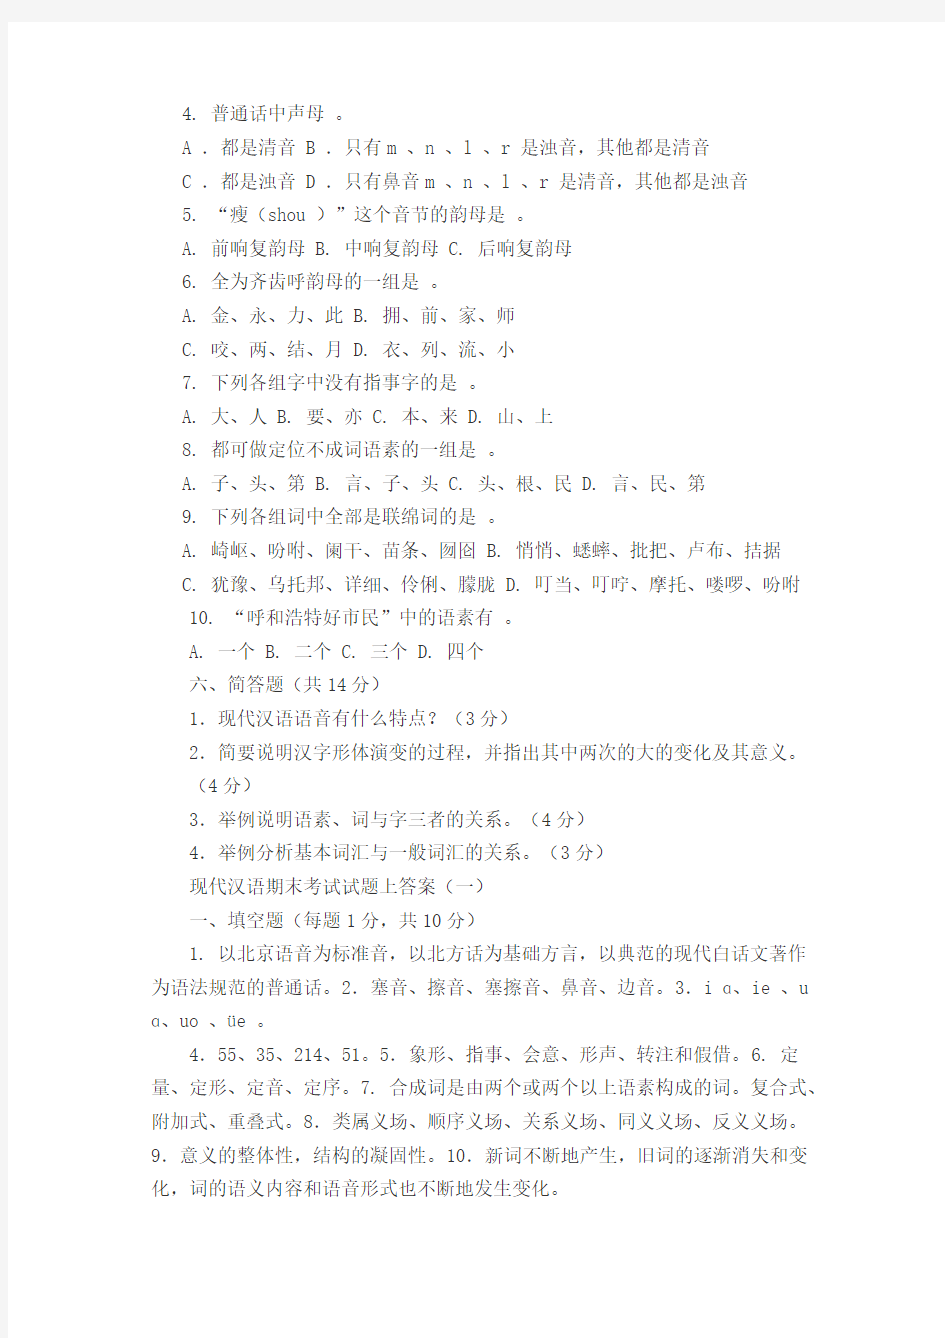 (完整版)现代汉语考试试题